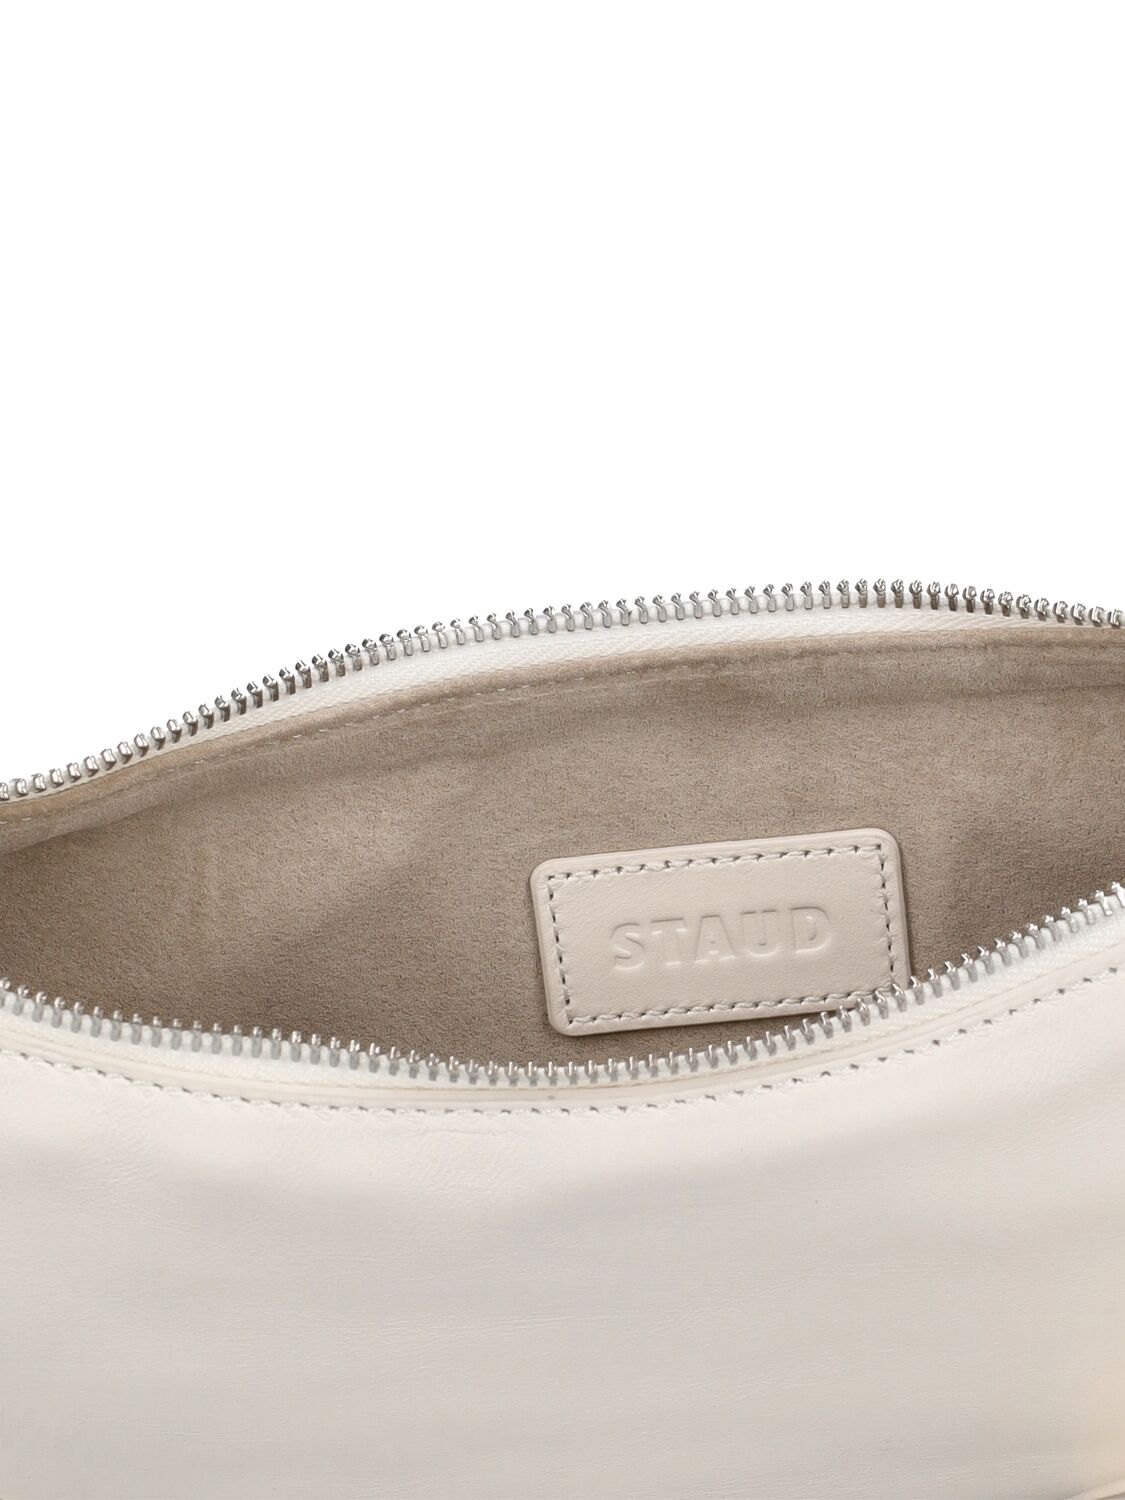 Shop Staud Walker Leather Shoulder Bag In Paper